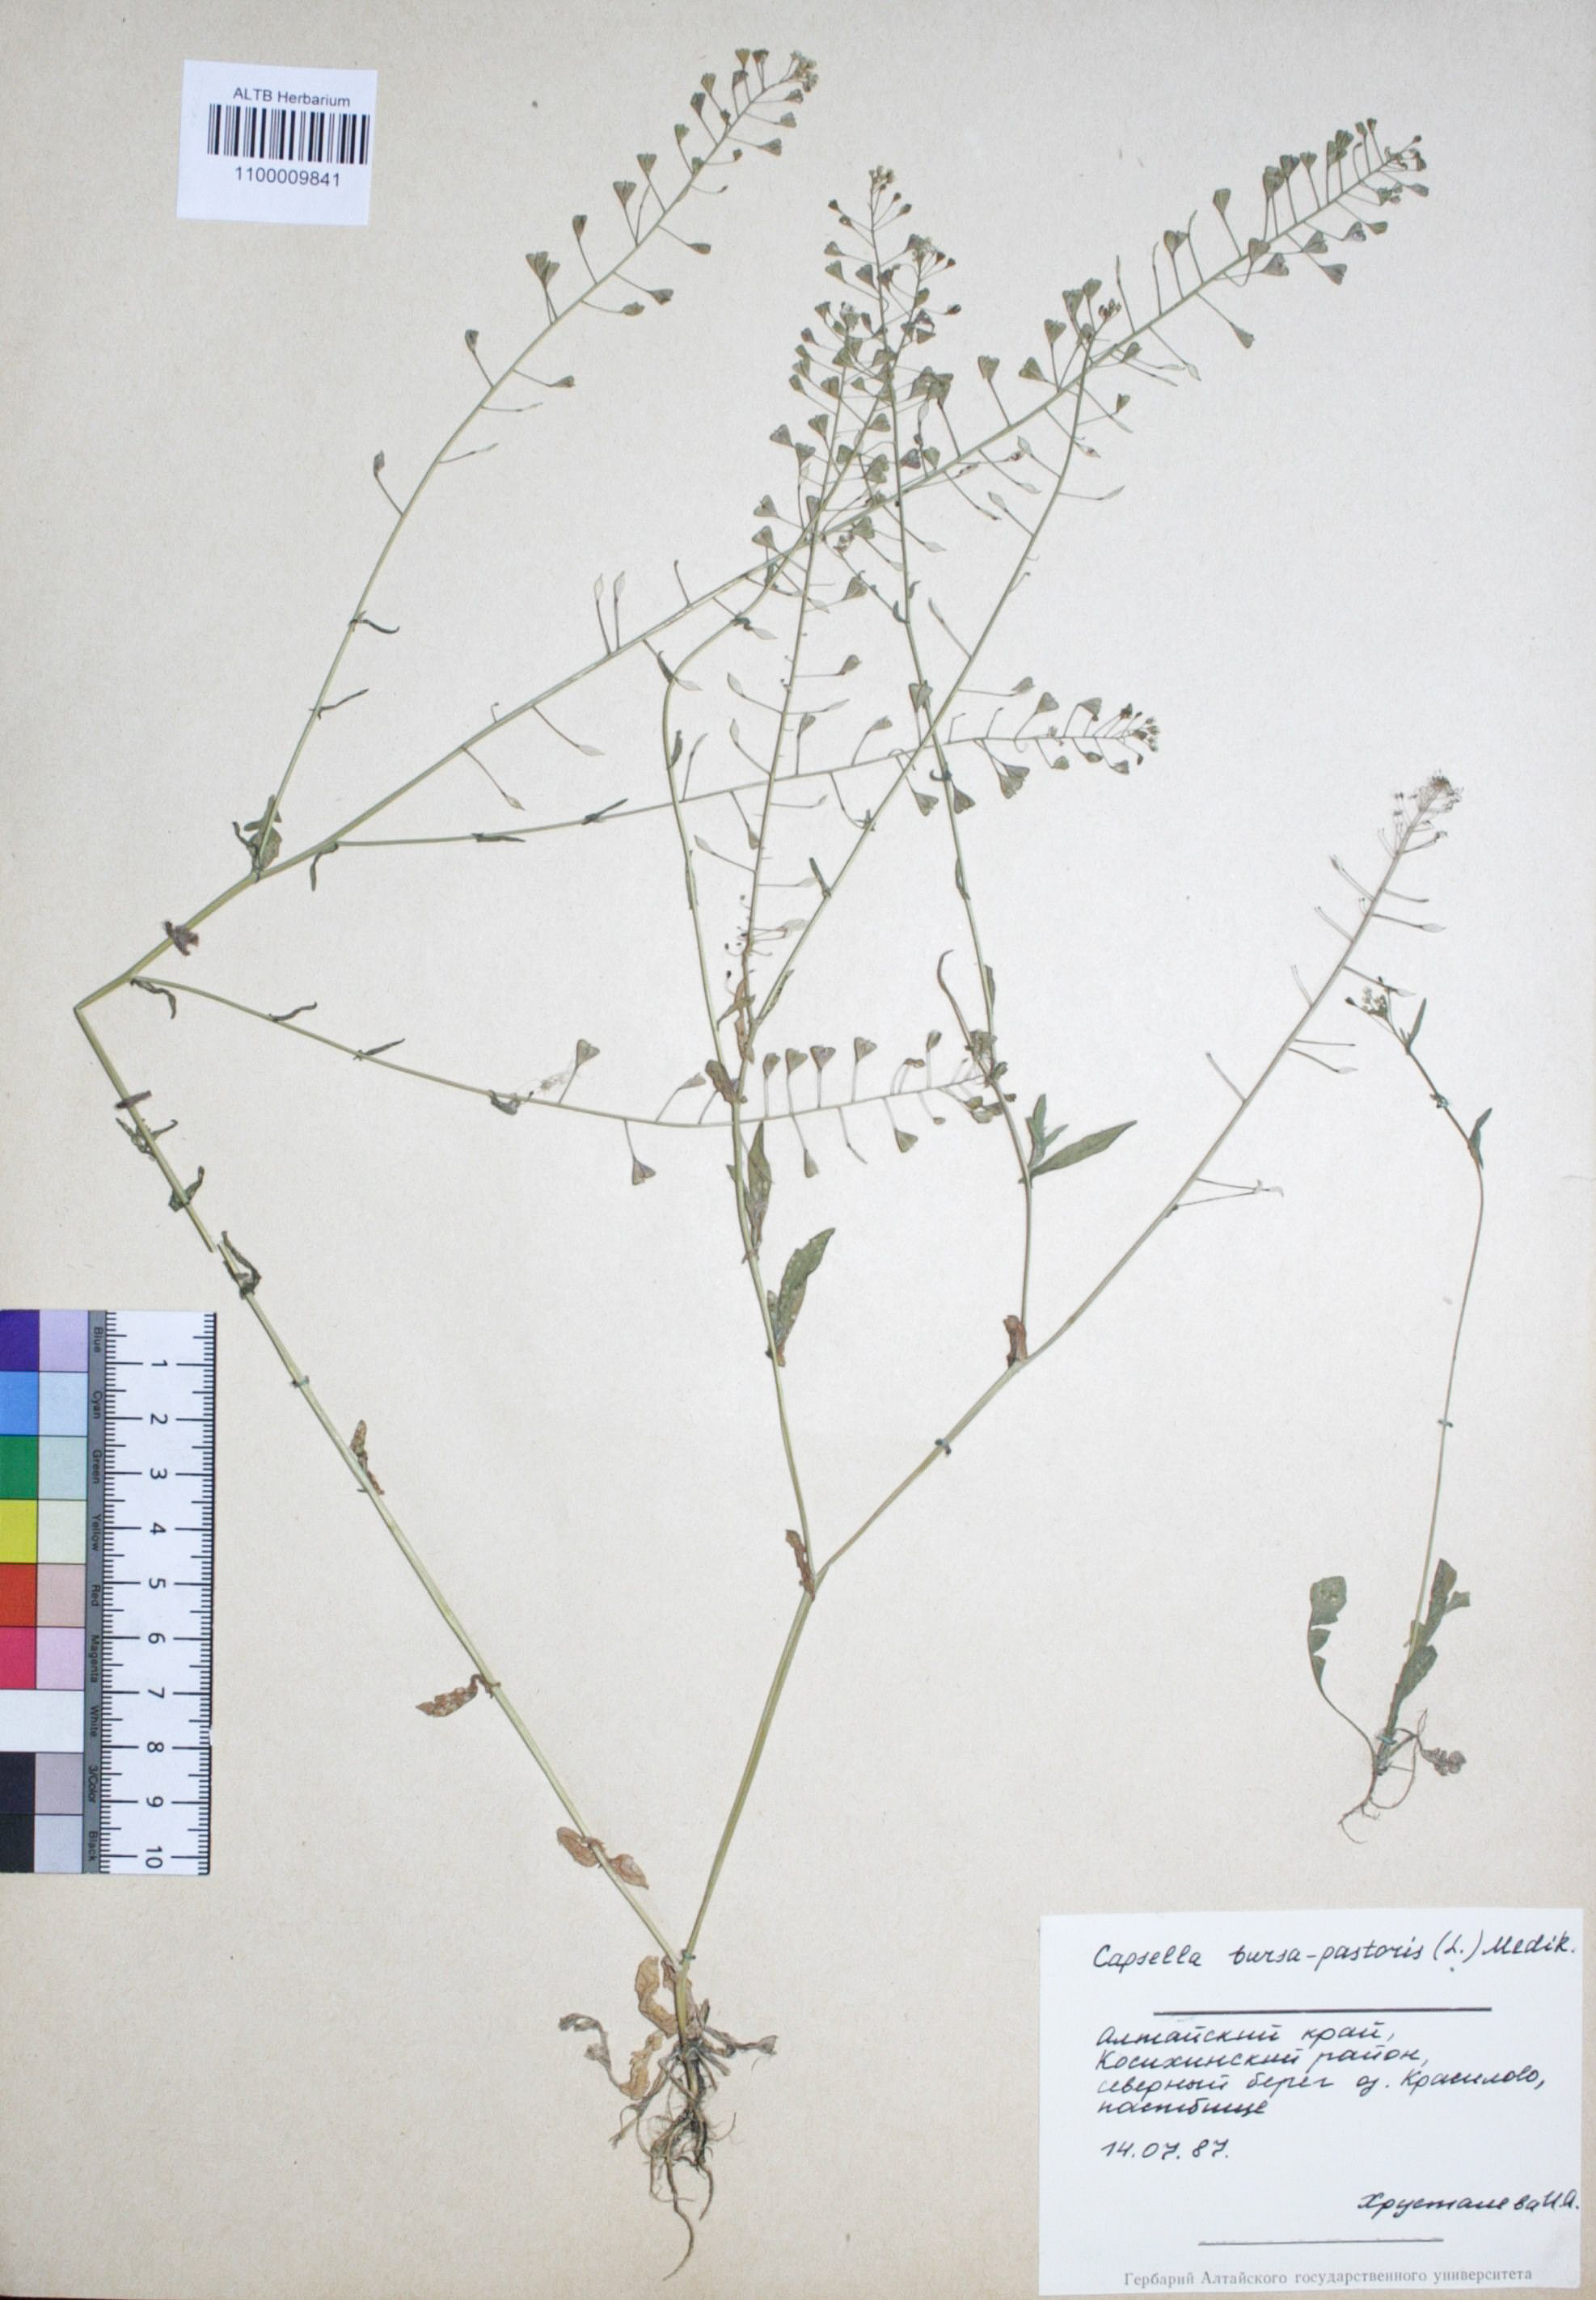 Capsella bursa-pastoris (L.) Medik.